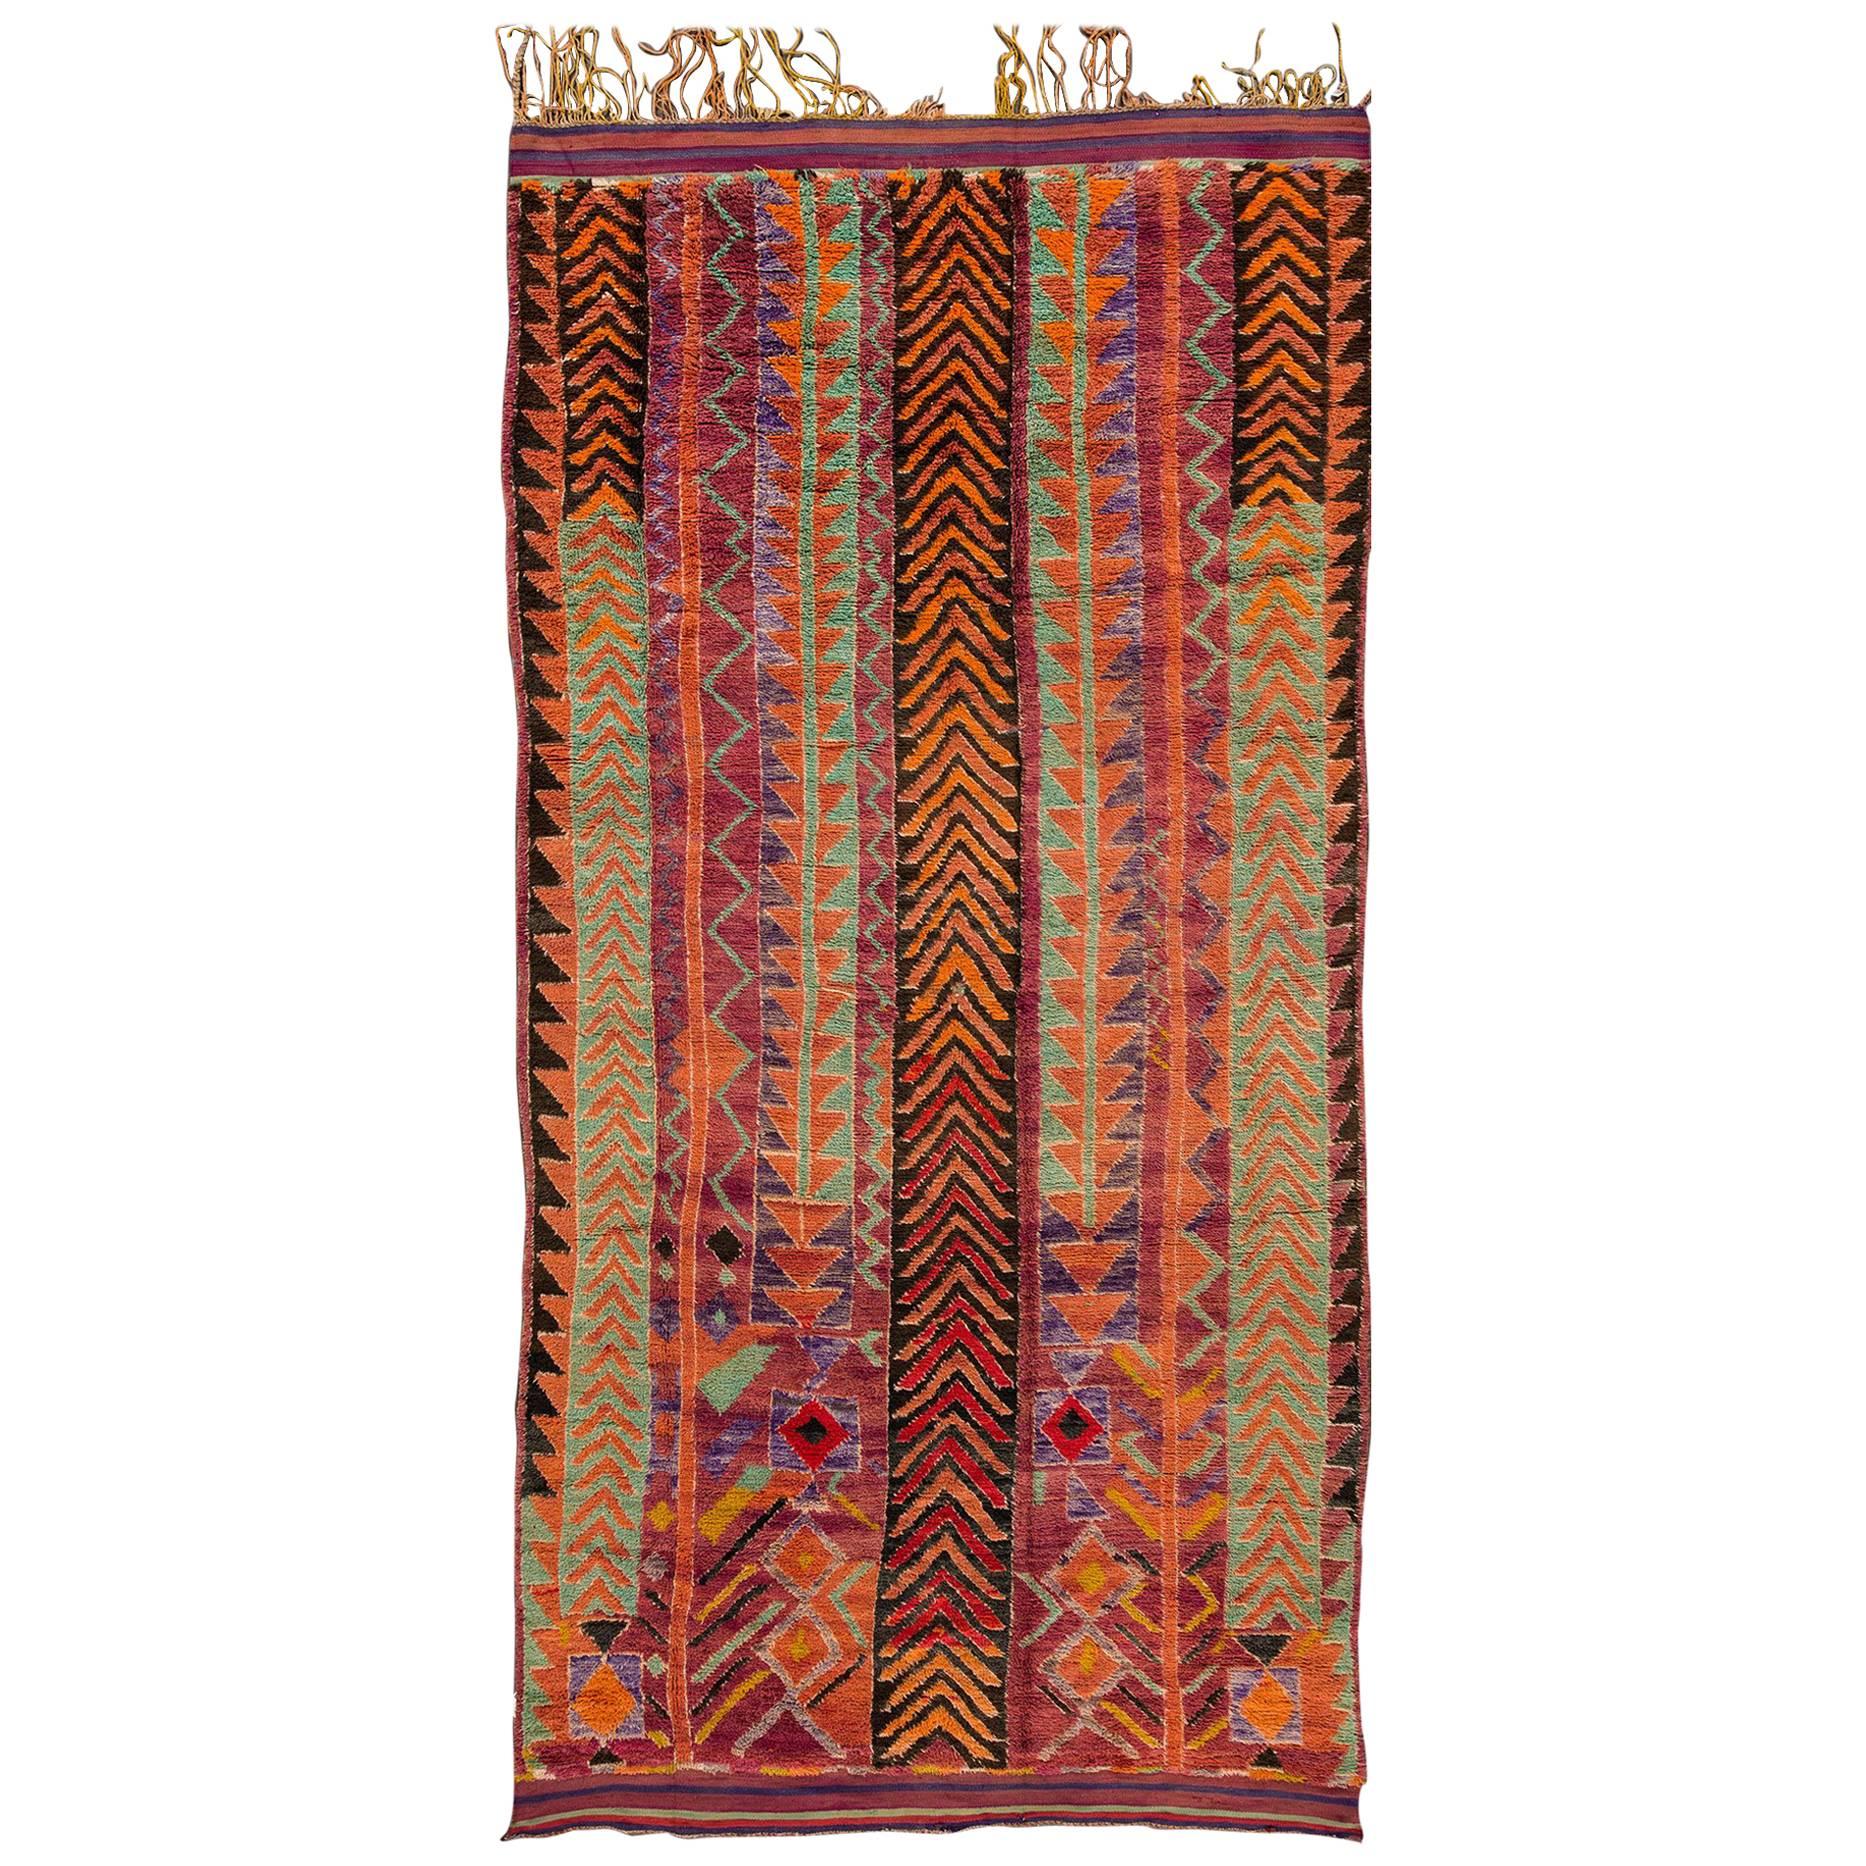 Vintage Multicolored Striped Geometric Moroccan Carpet, 6x13.10